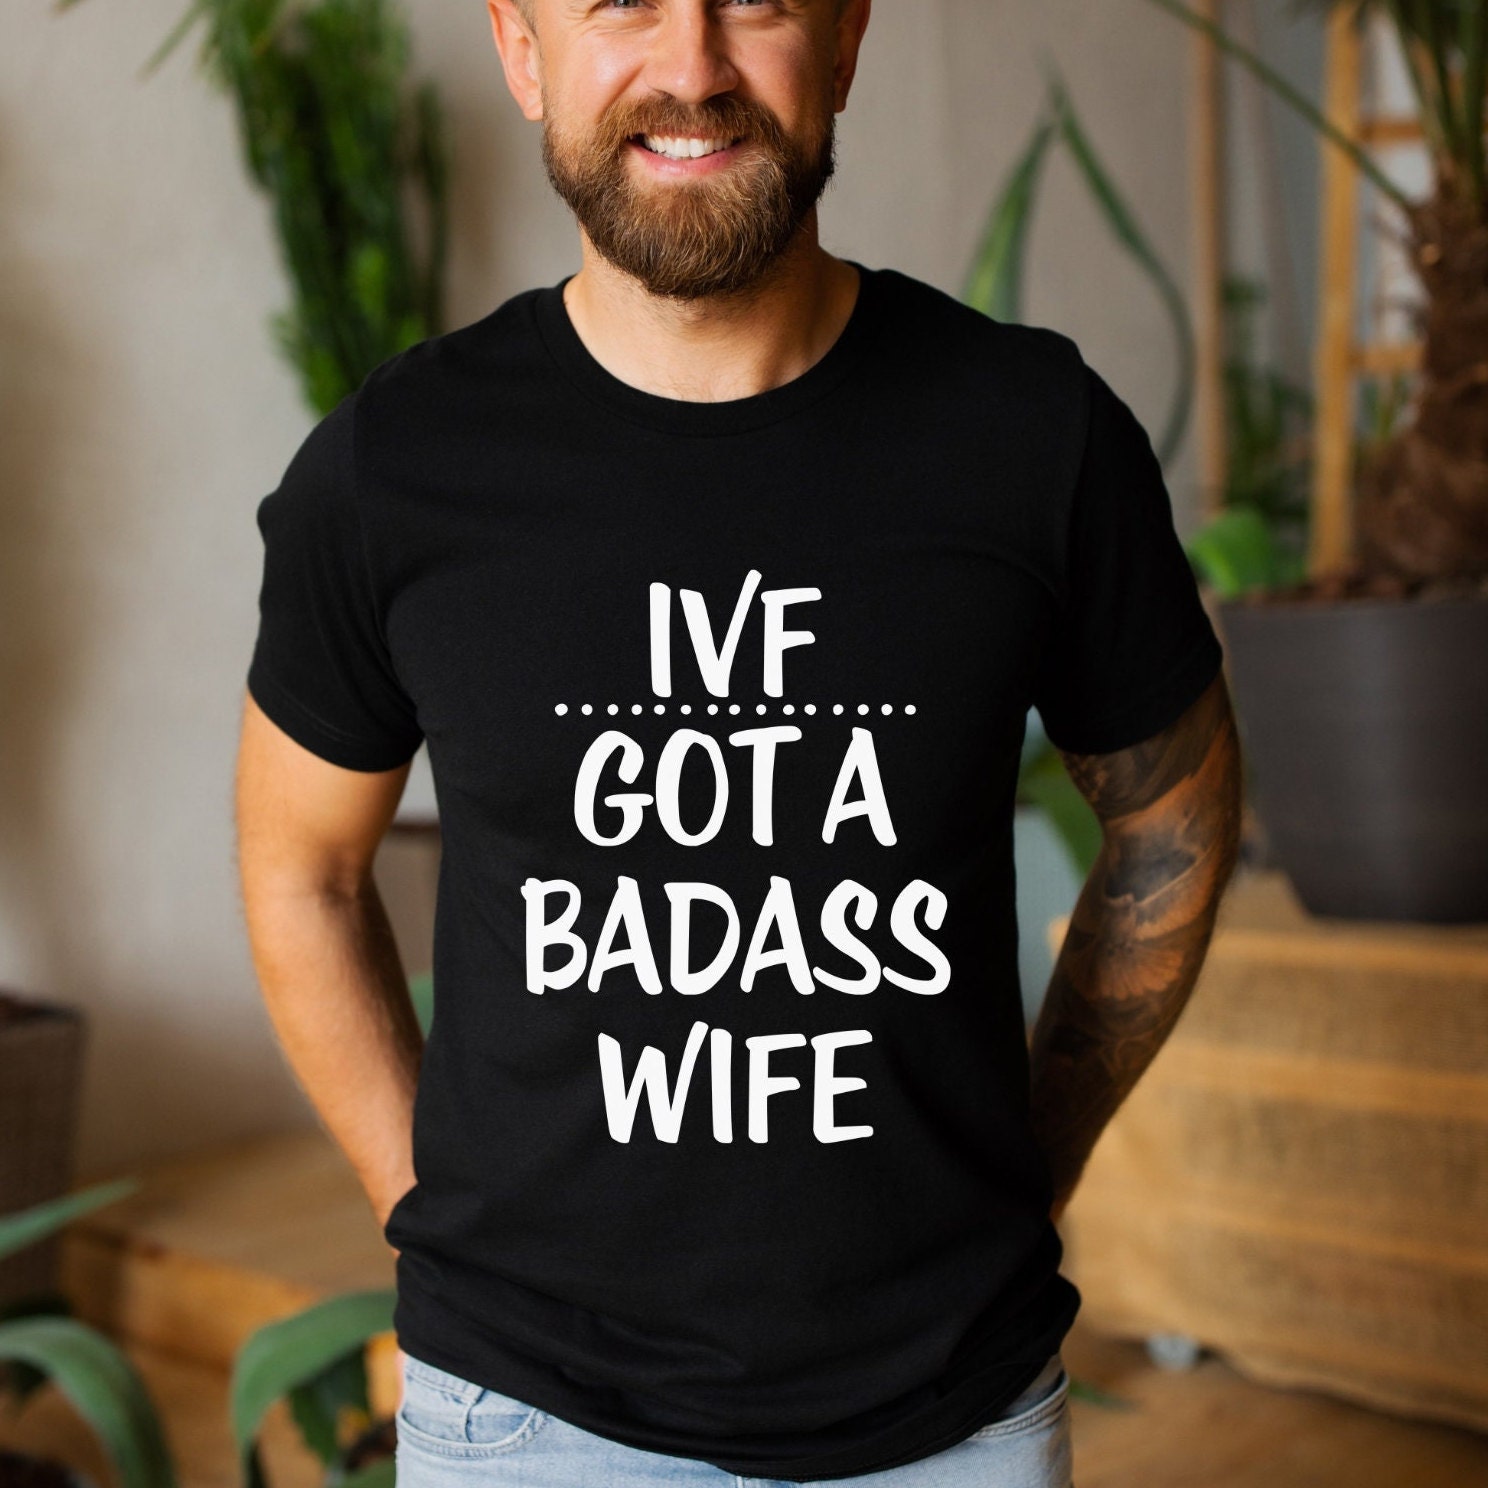 Mens IVF Shirt IVF Got a Badass Wife IVF Shirt picture